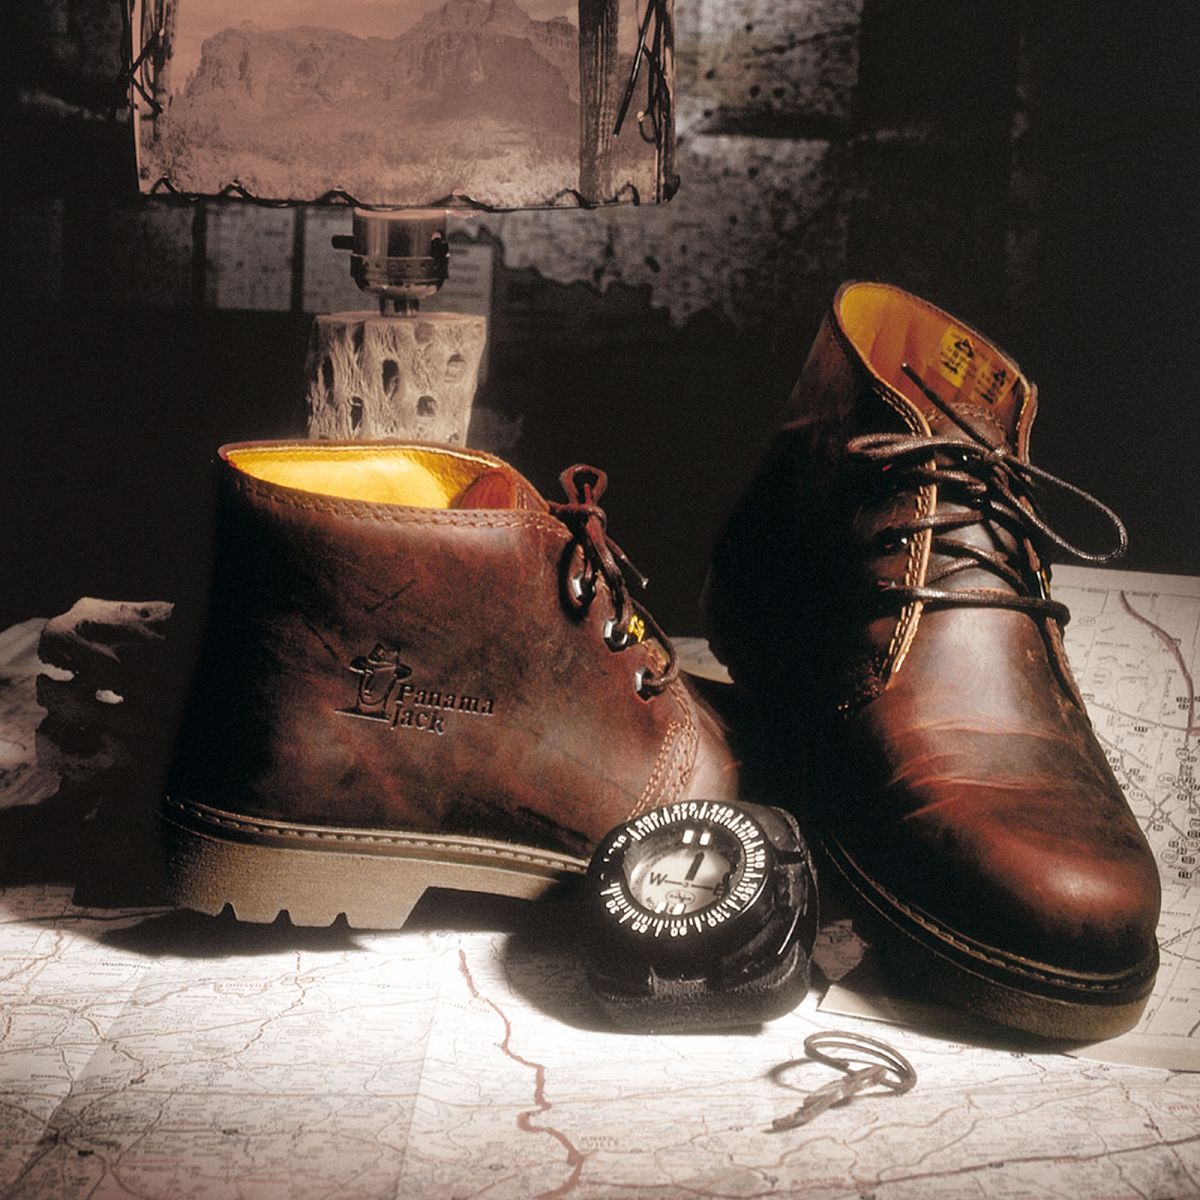 Panama Jack Schuhe Boots Bota Braun Nappa Waterproof Lederfutter